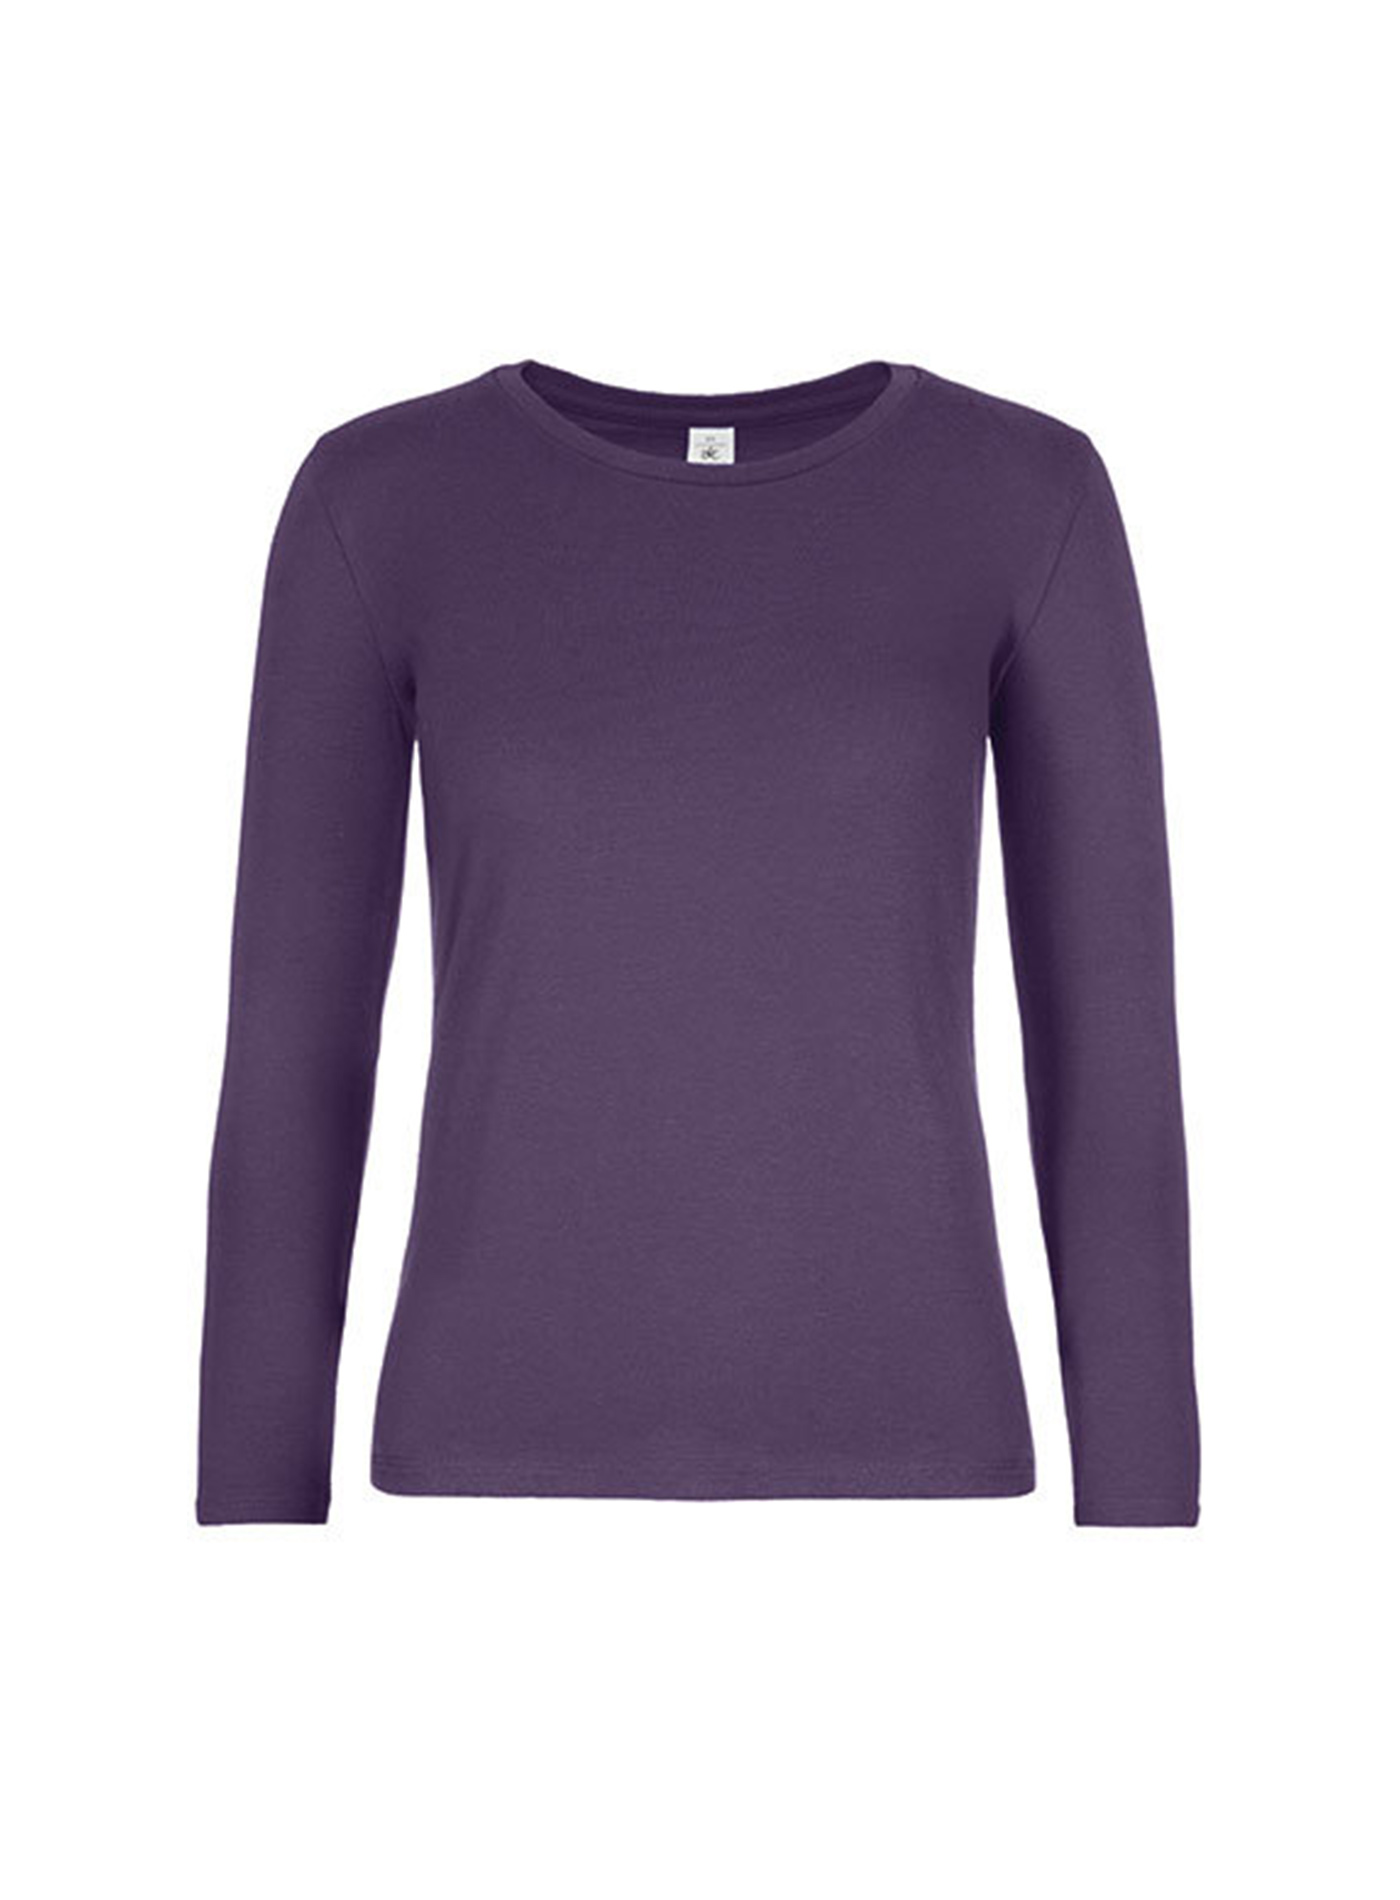 Dámské tričko s dlouhým rukávem B&C Collection - Tmavě fialová XS